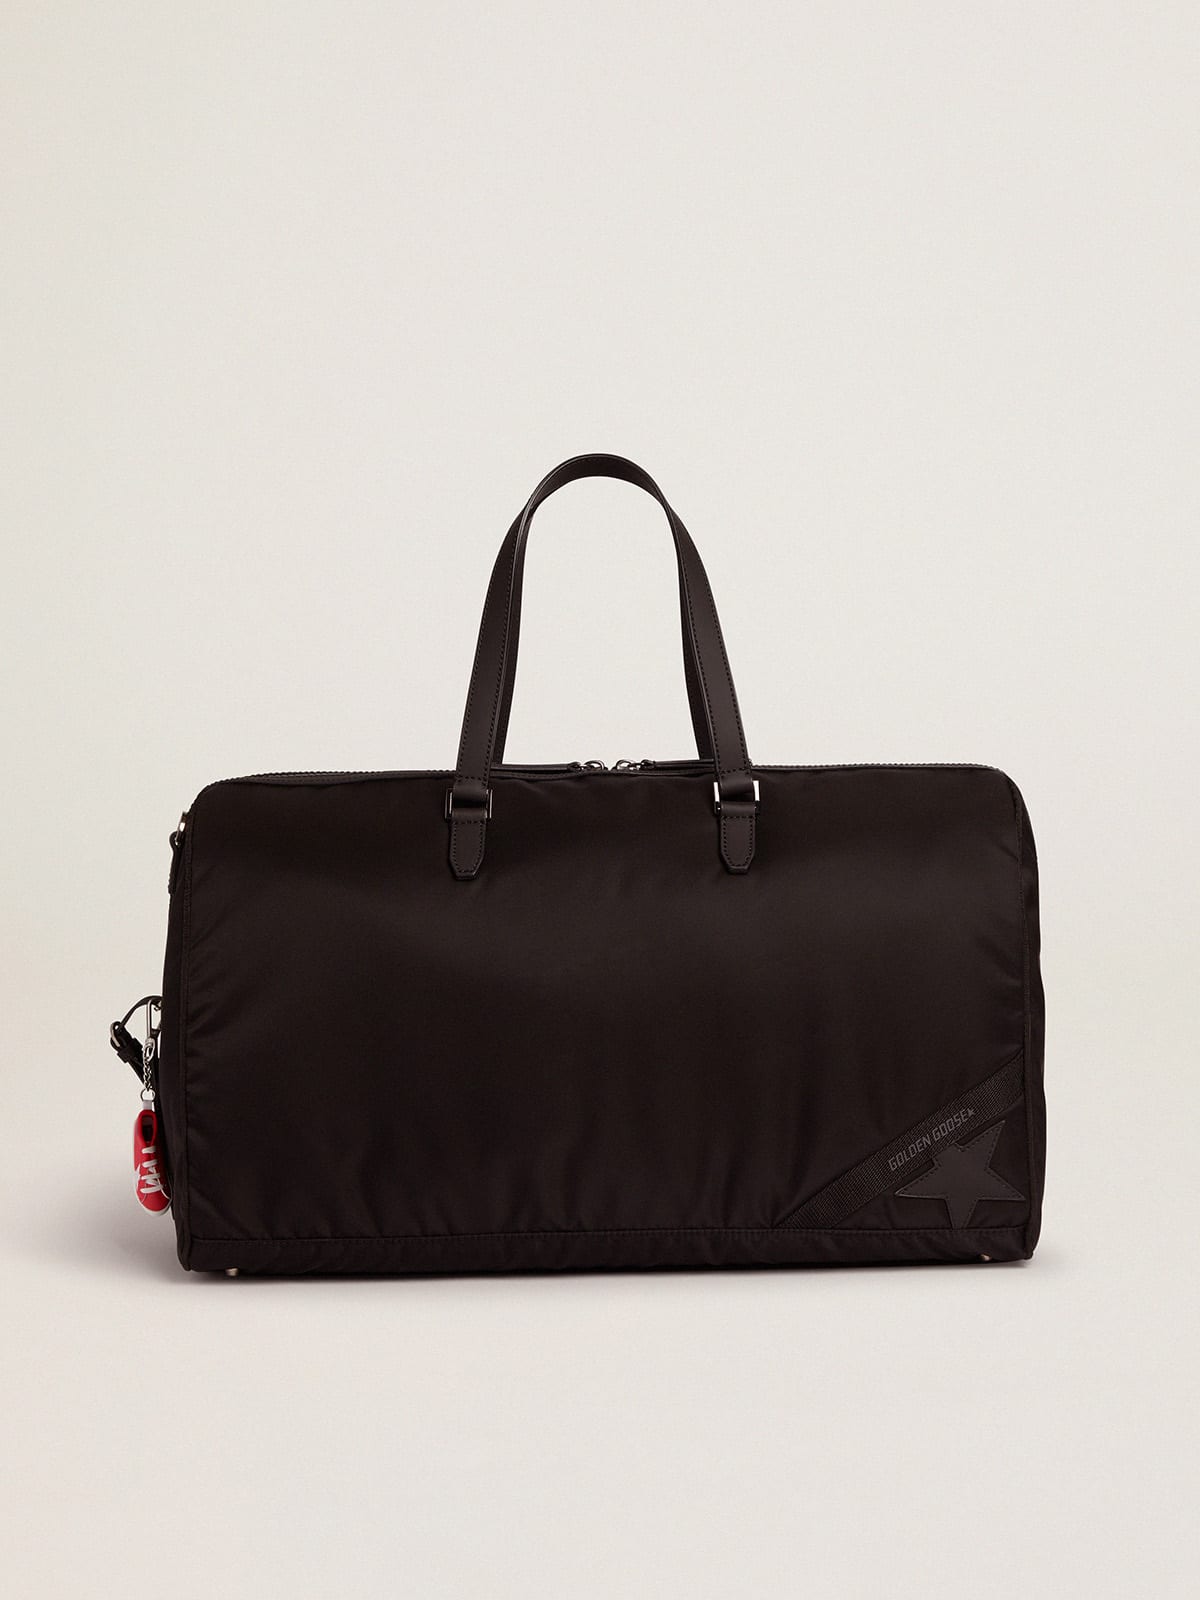 Journey Duffle Bag in black nylon | Golden Goose